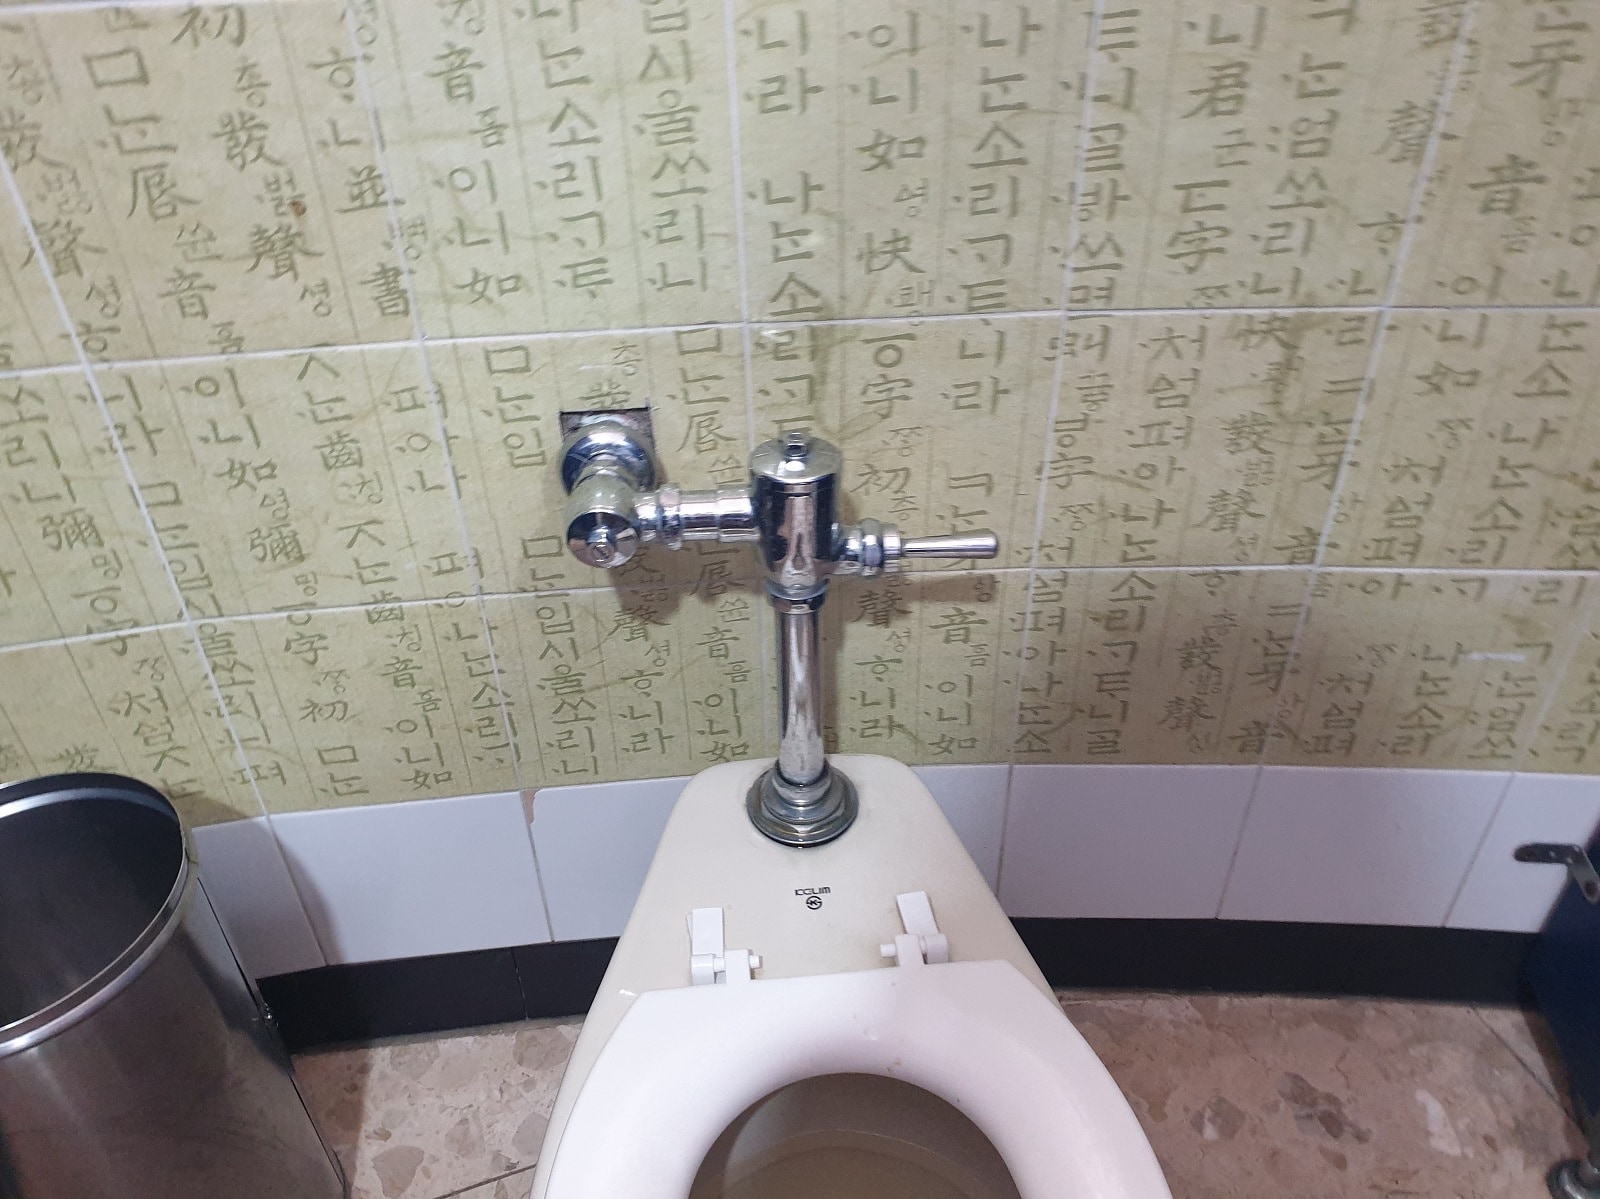 トイレの壁タイルに韓国らしさを取り入れている例